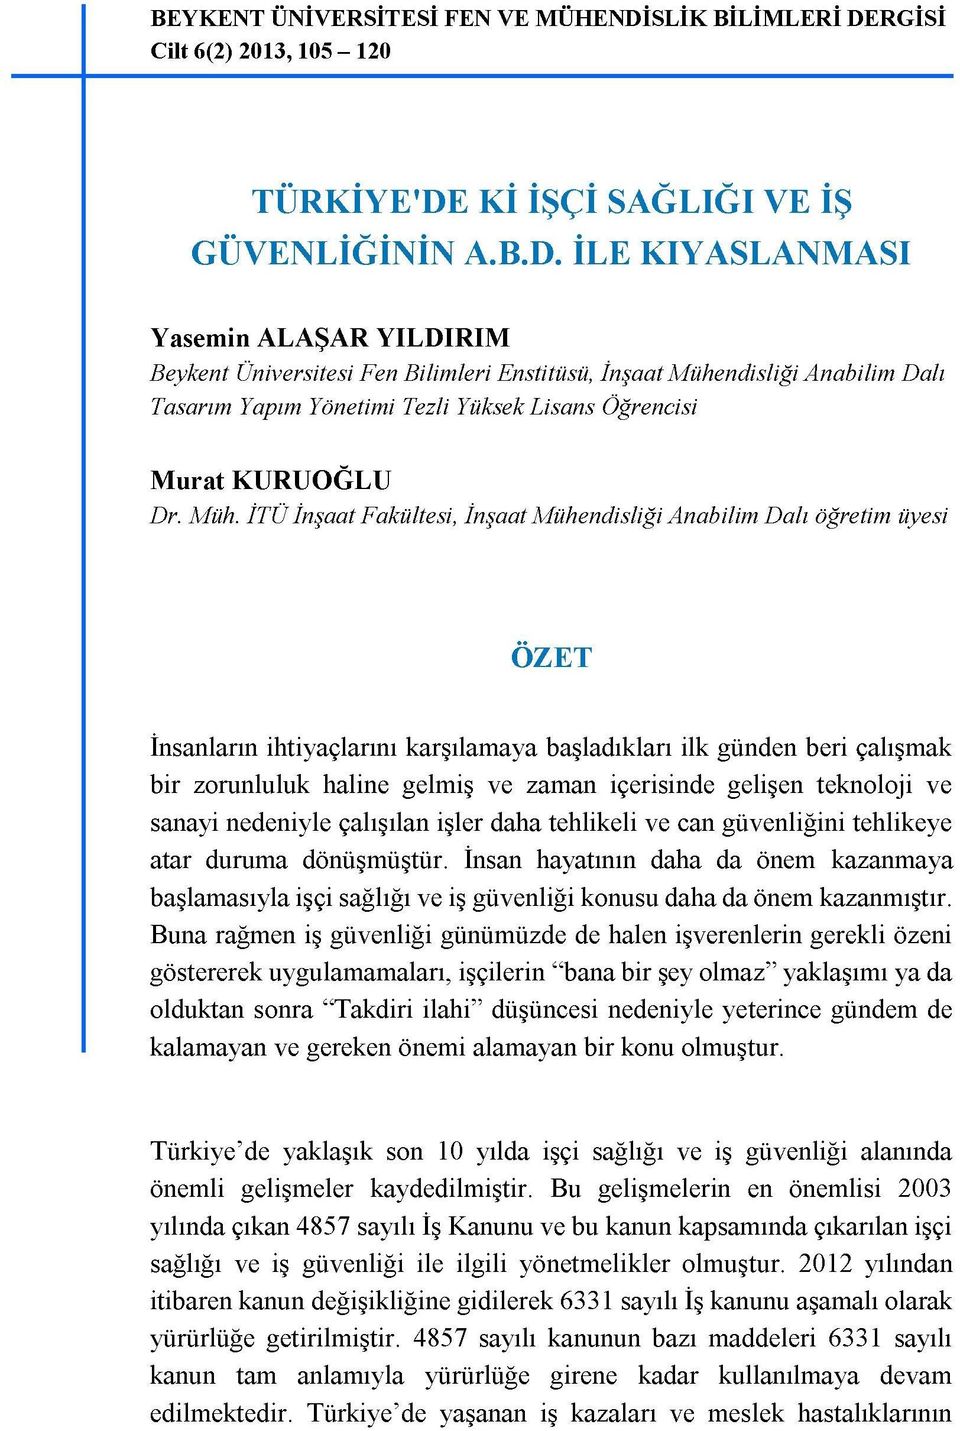 RGİSİ Cilt 6(2) 2013, 105-120 TÜRKİYE'DE